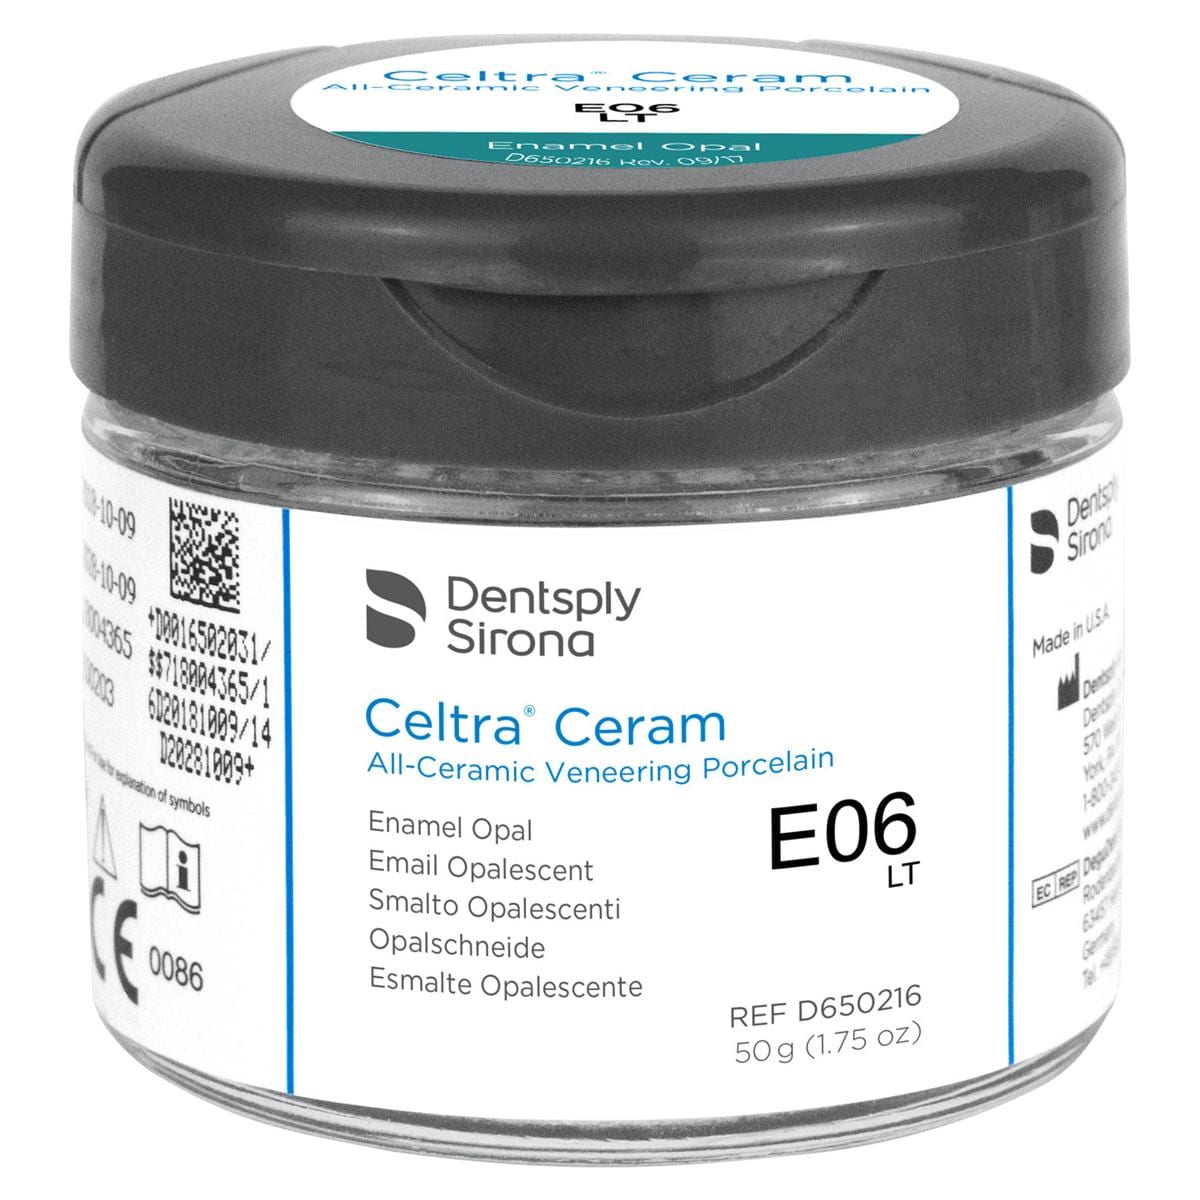 CELTRA® Ceram Enamel Opal - EO6 LT, Packung 50 g